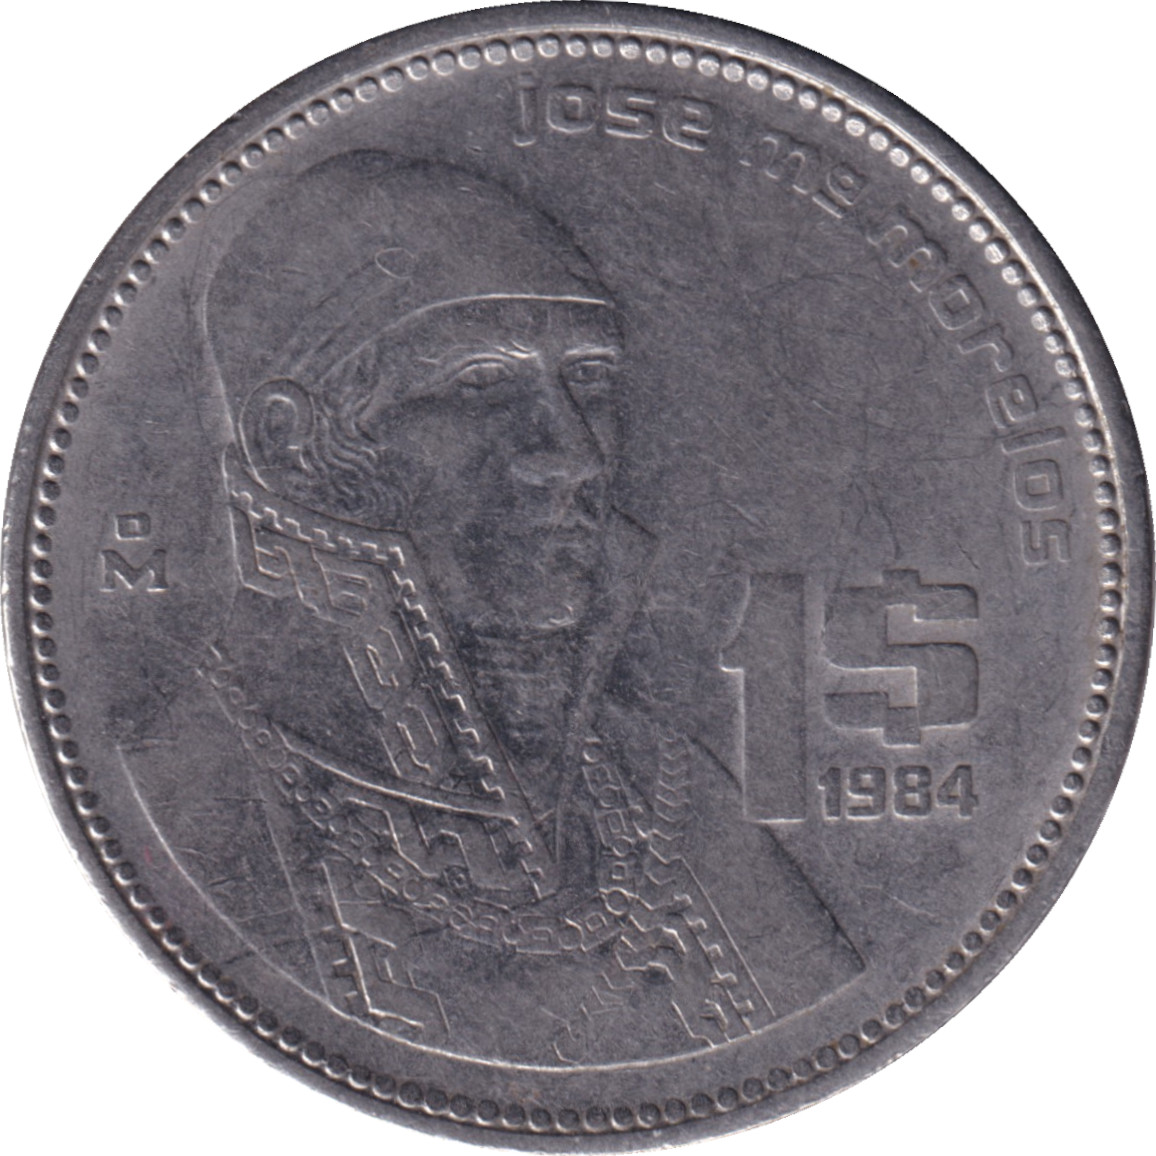 1 peso - Jose Morelos